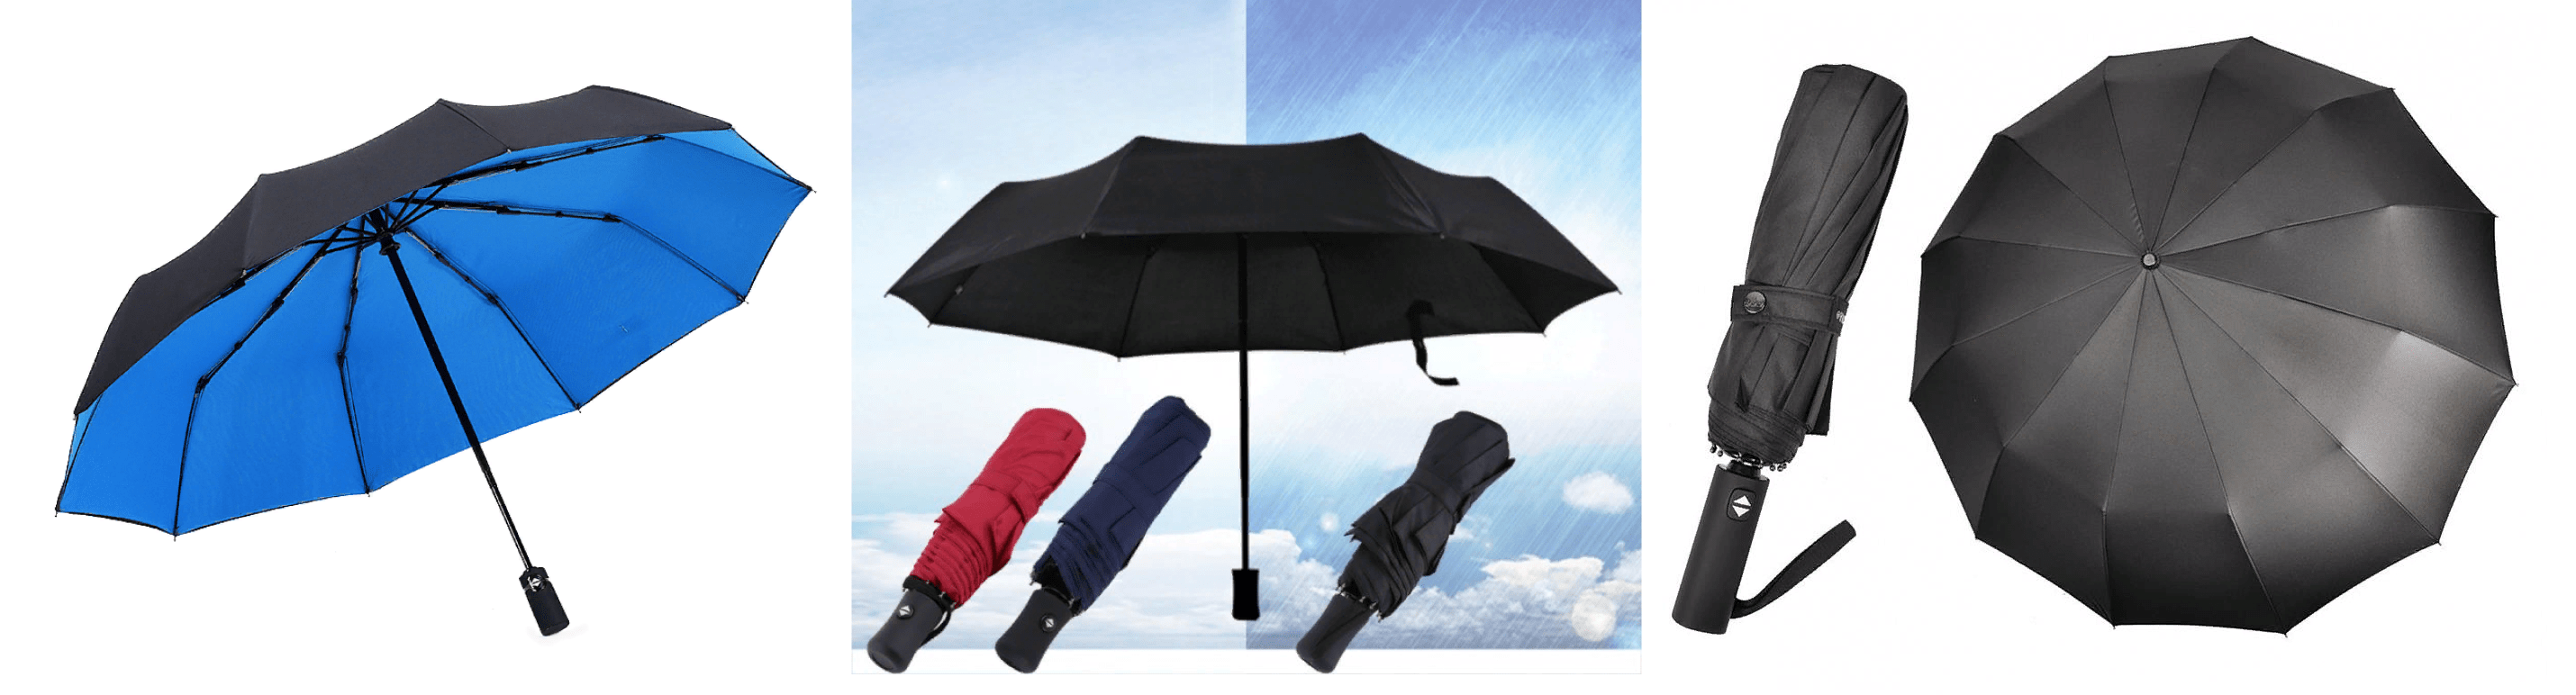 Зонты — один из множества товаров, которые можно заказать на китайских онлайн-площадках